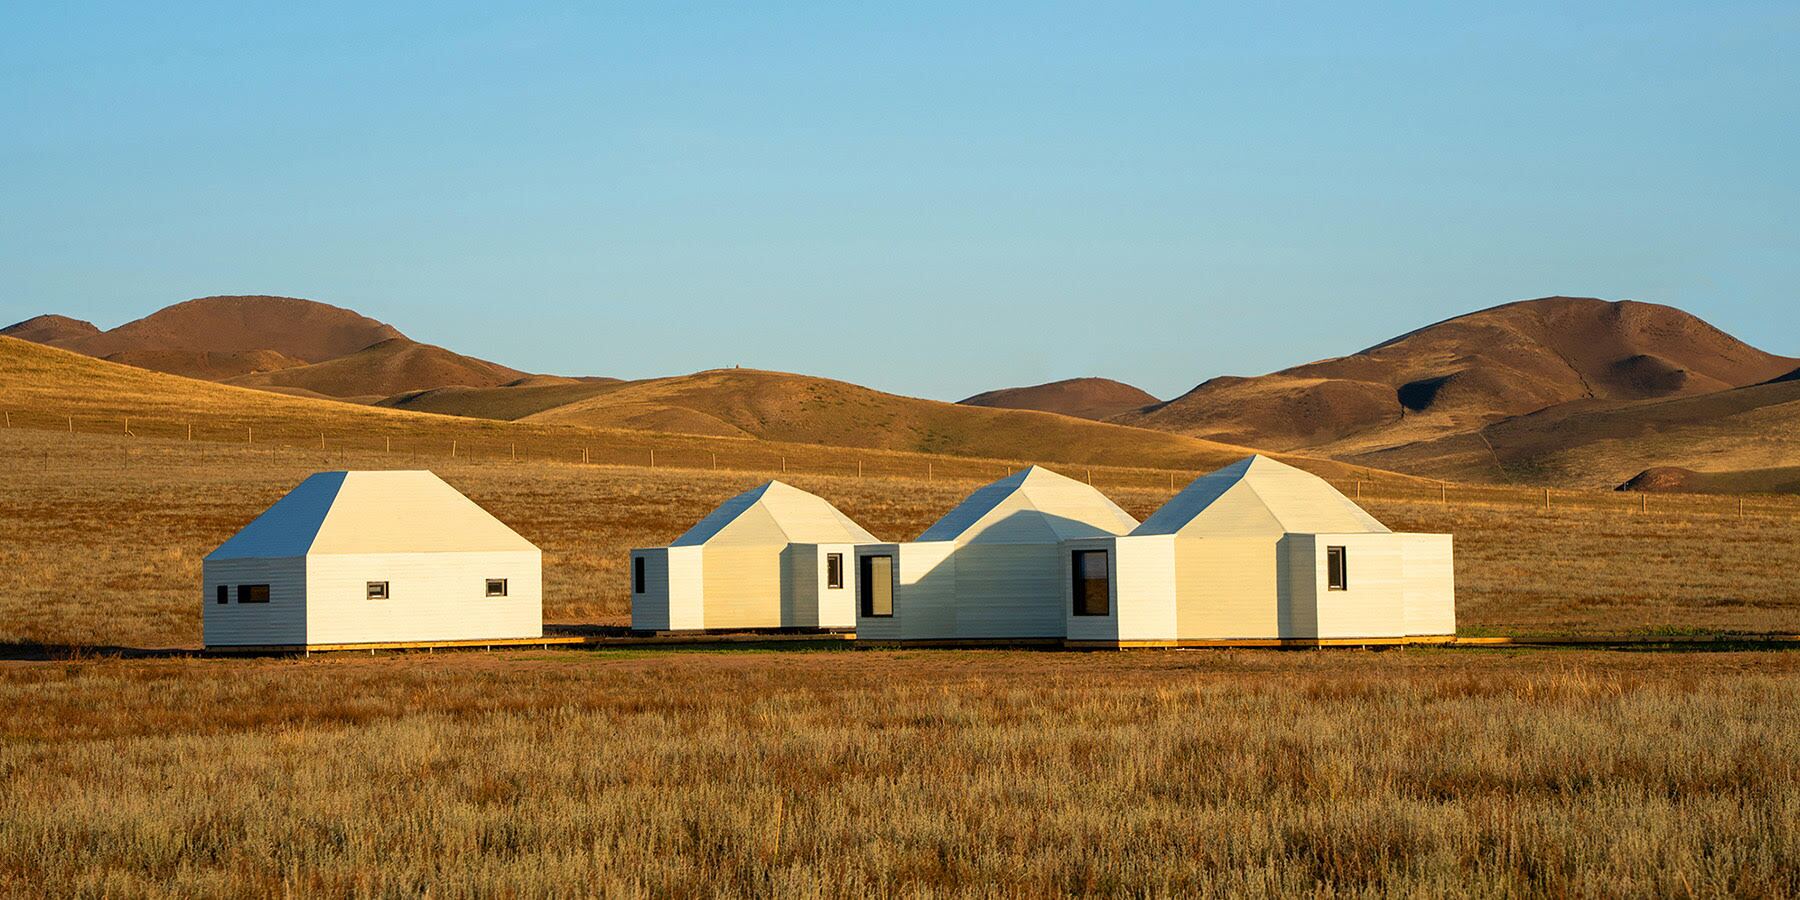 مرکز اجتماعی علفزار، چادر های سنتی مغولی را با استانداردهای زیست پایداری تطبیق می دهد